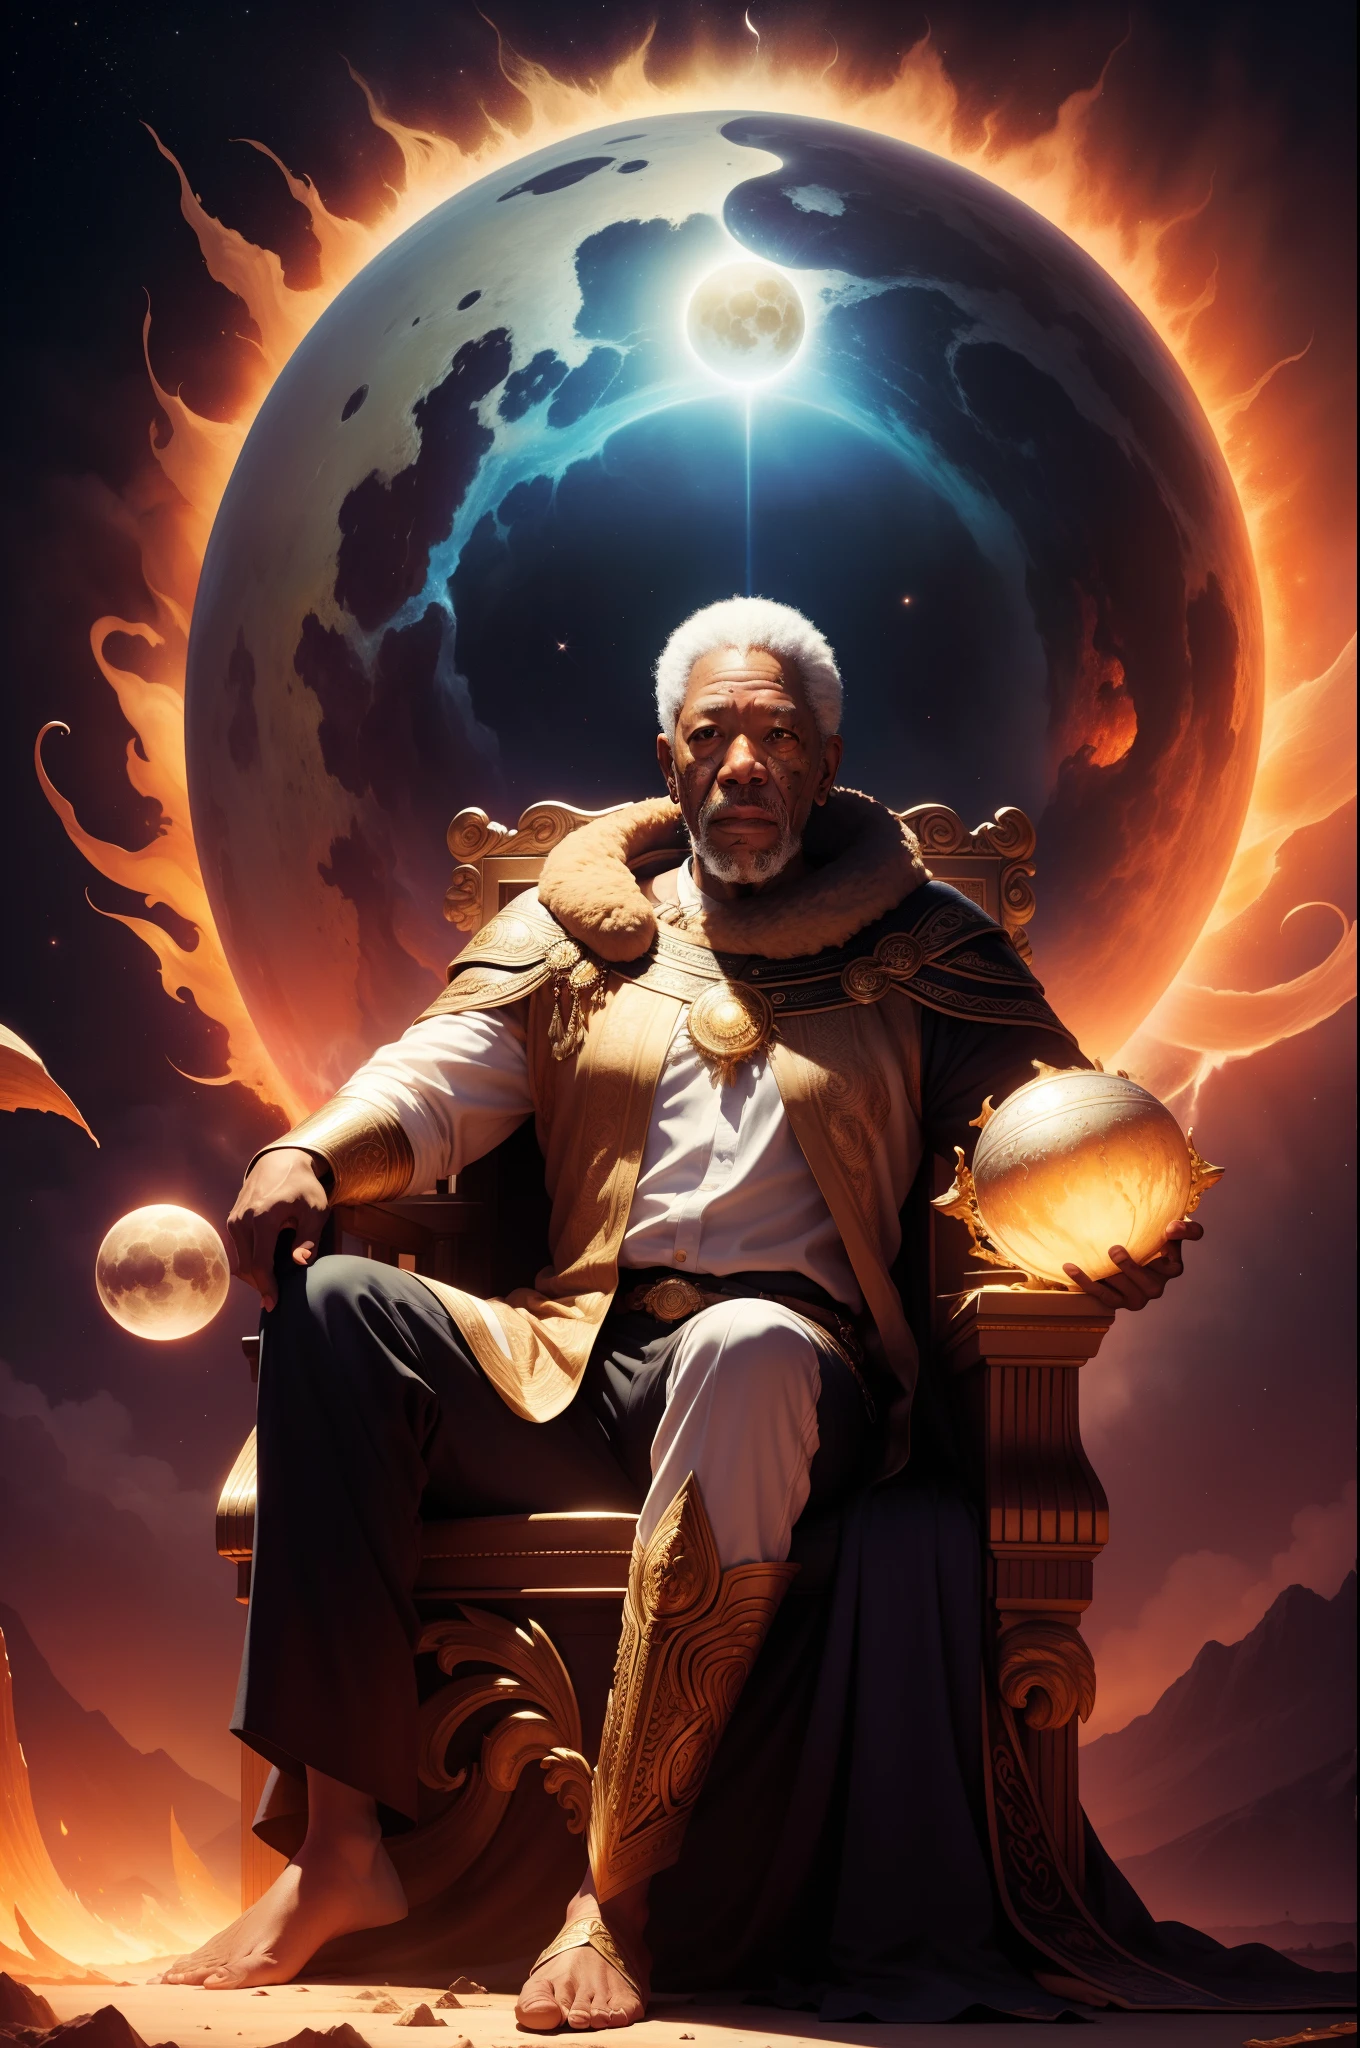 "Um retrato de Morgan Freeman na forma de um deus mítico. Retrate-o segurando o sol e a lua, envolto por uma aura radiante. Coloque-os em um trono magnífico em meio a um cenário cósmico."